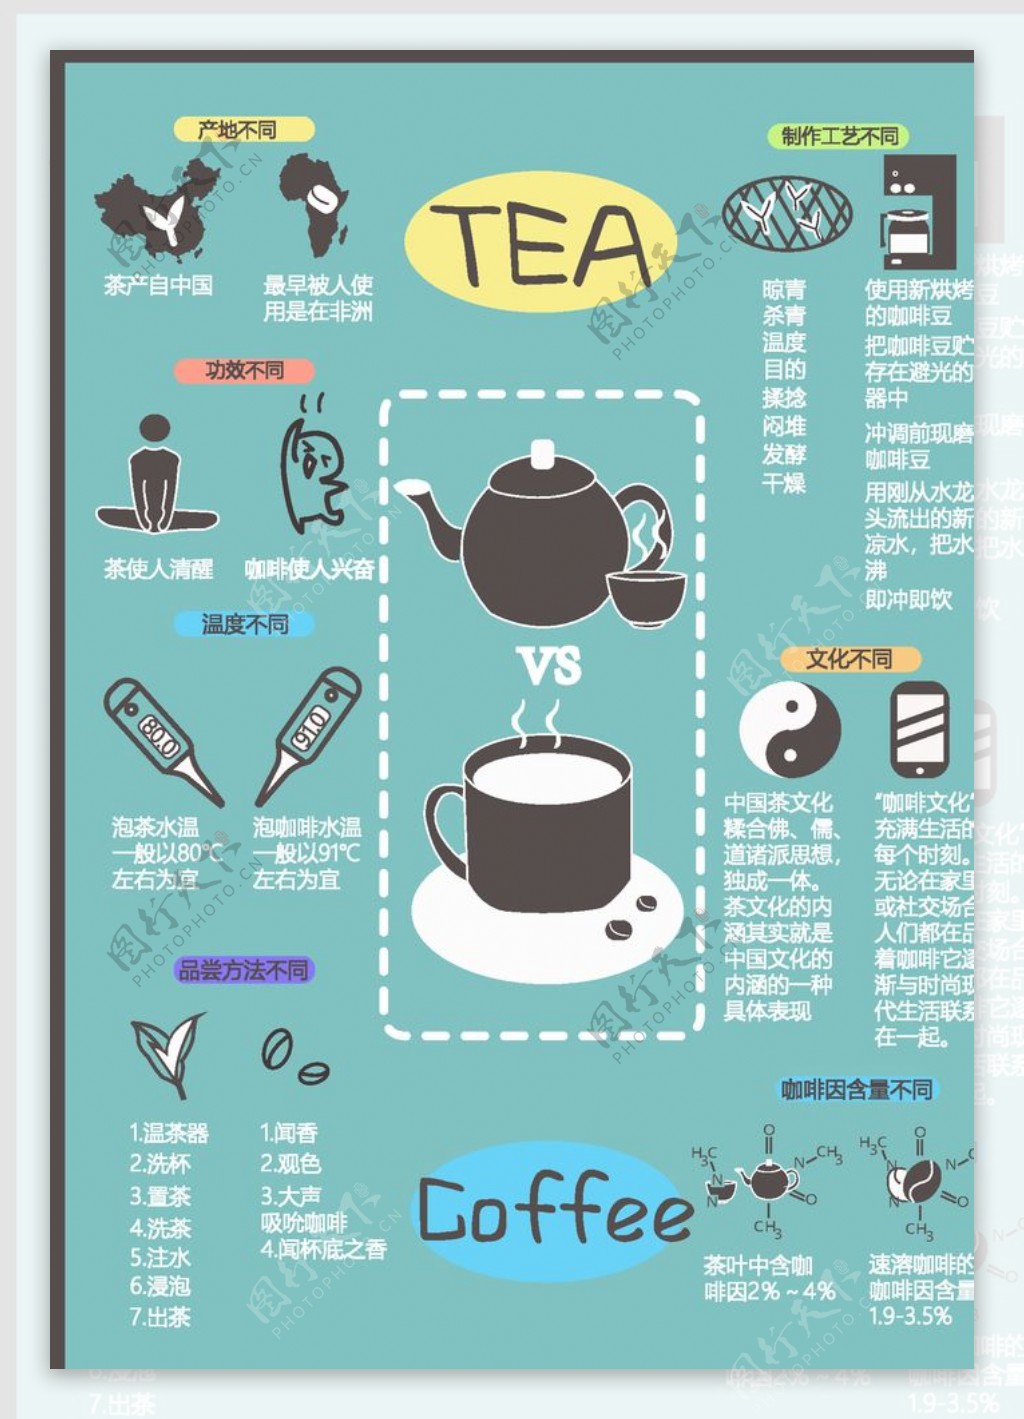 茶与咖啡对比的信息图形设计